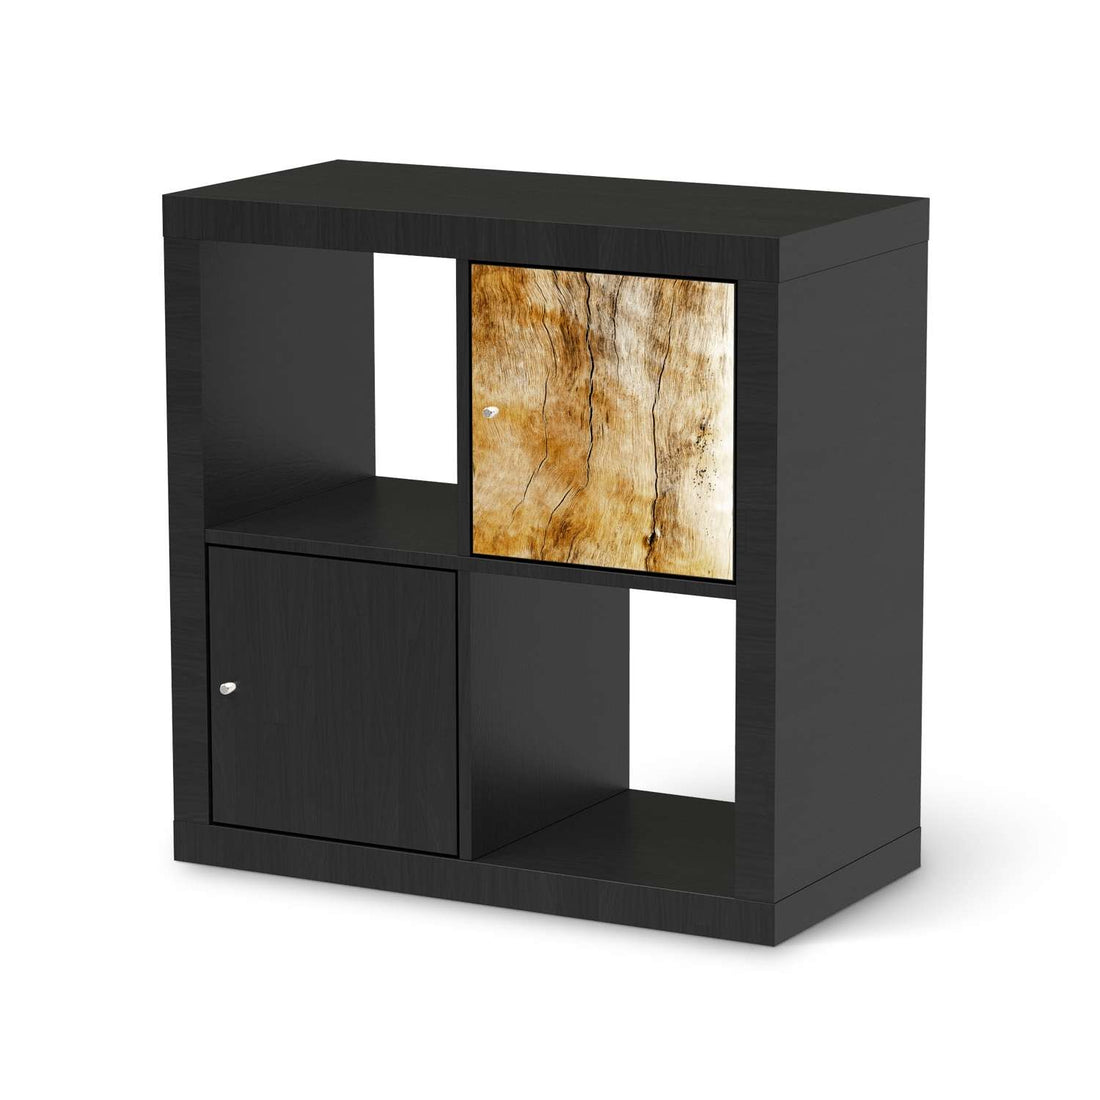 Selbstklebende Folie Unterholz - IKEA Kallax Regal 1 Türe - schwarz